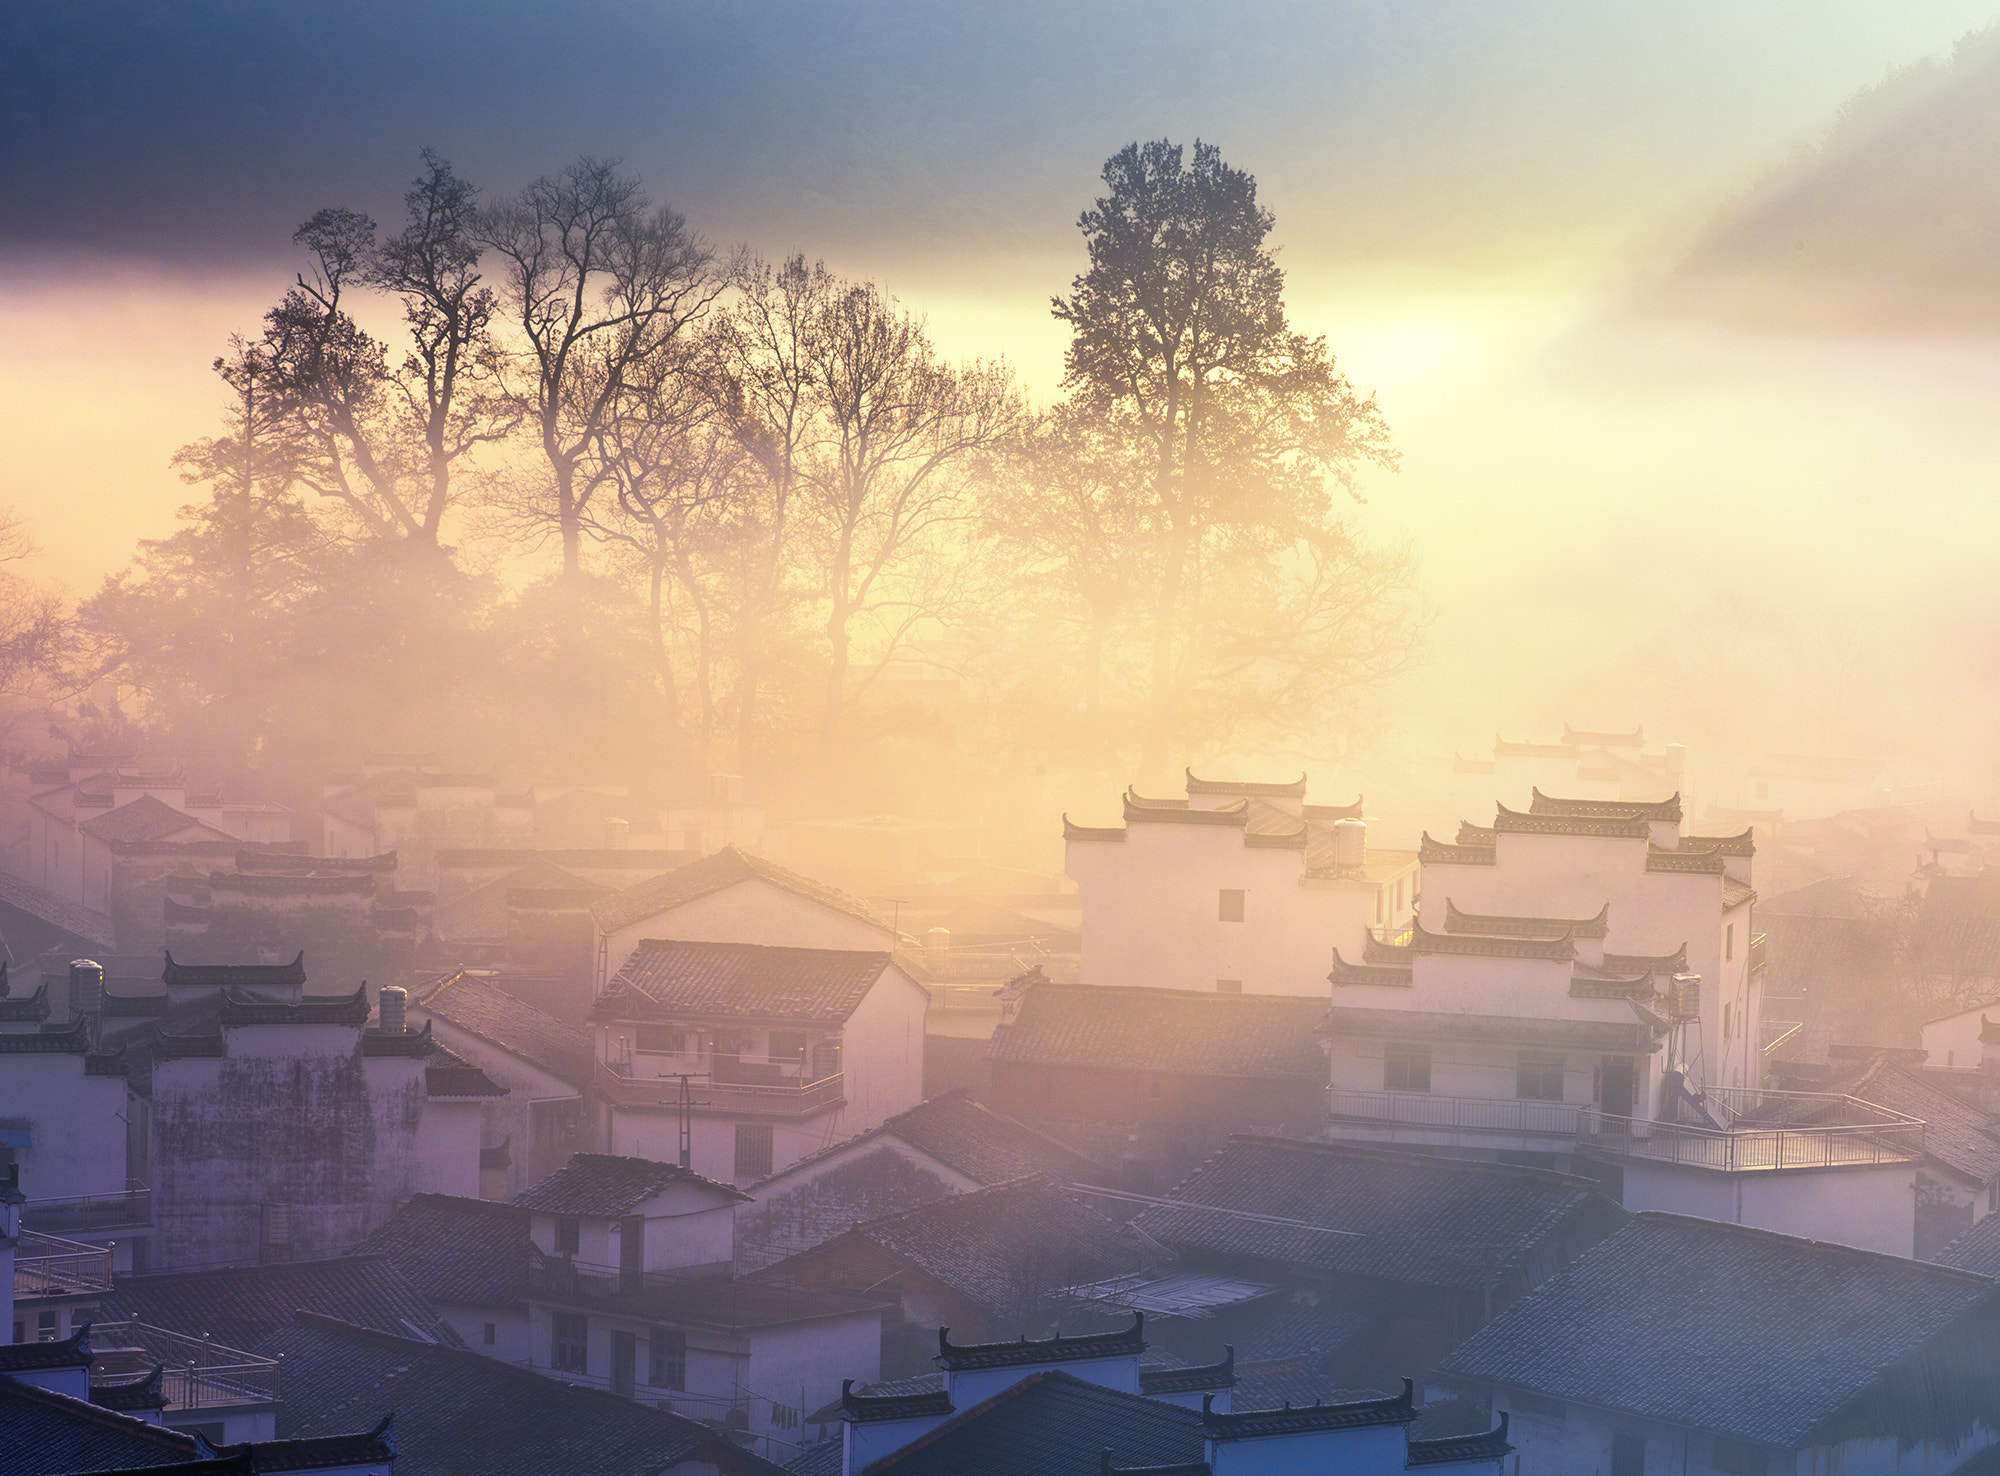 Phase One IQ260 sample photo. Morning fog cover stone village, china photography